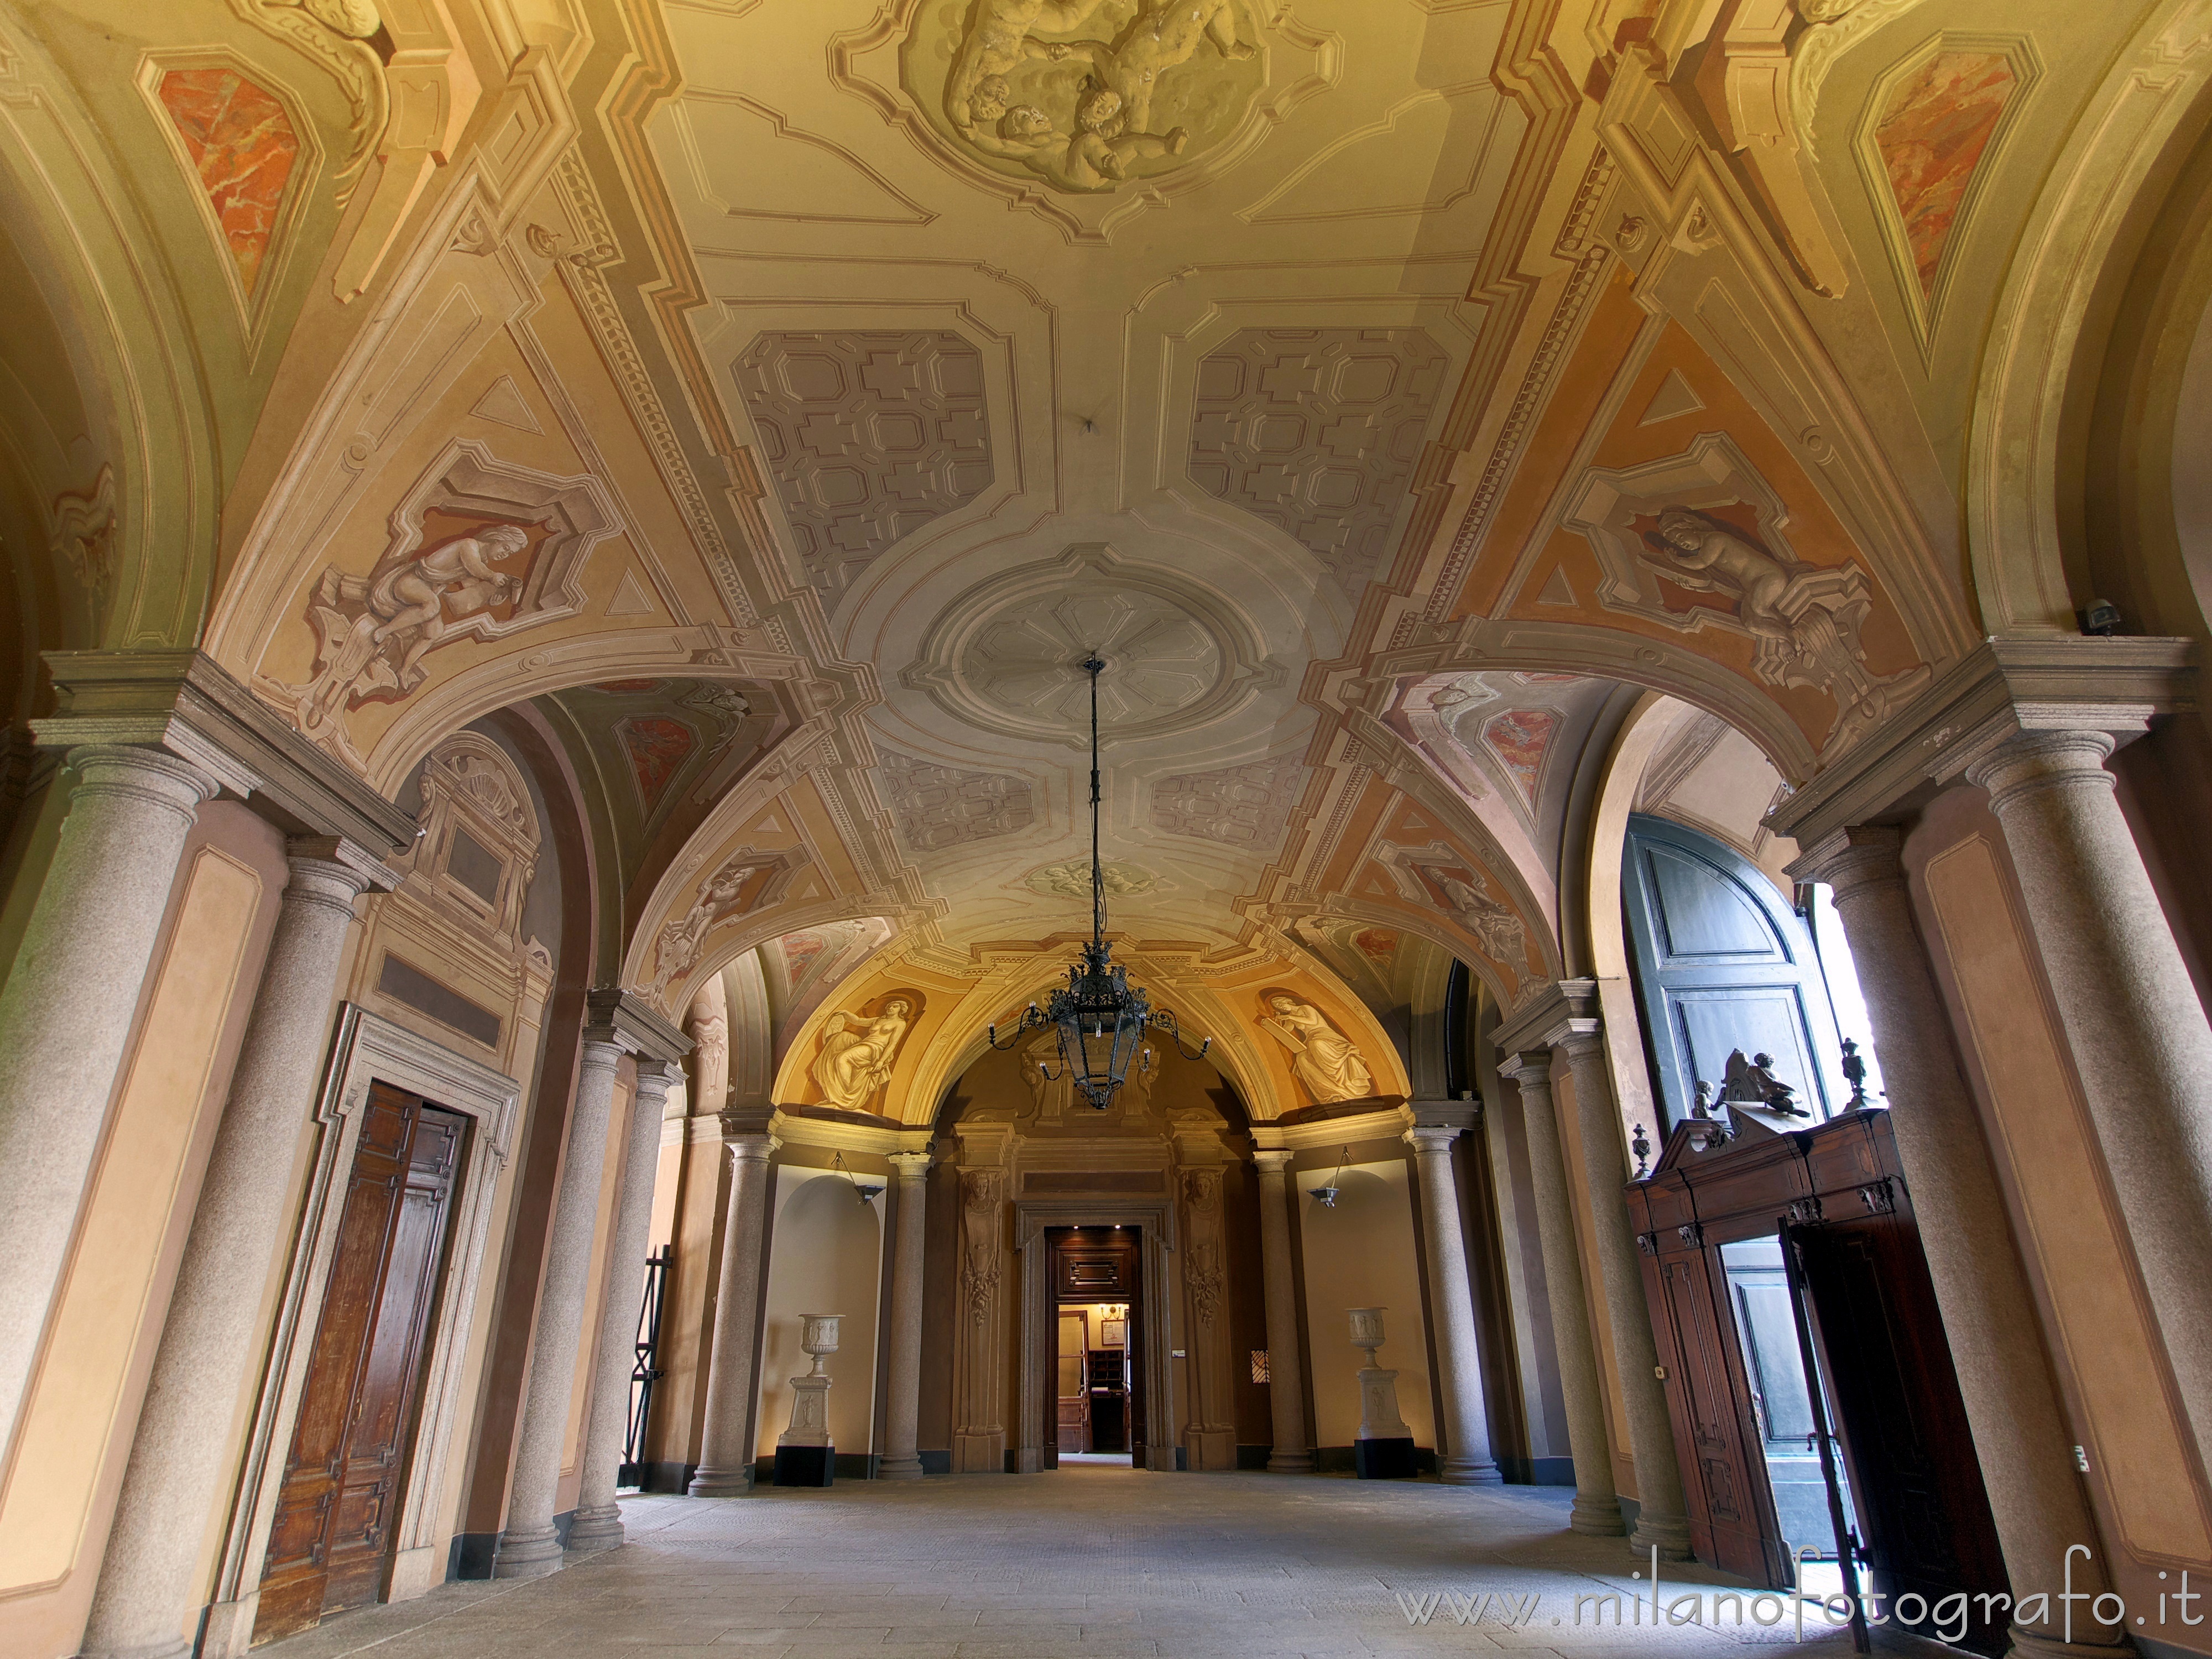 Milan (Italy): Entrance hall of Serbelloni Palace - Milan (Italy)